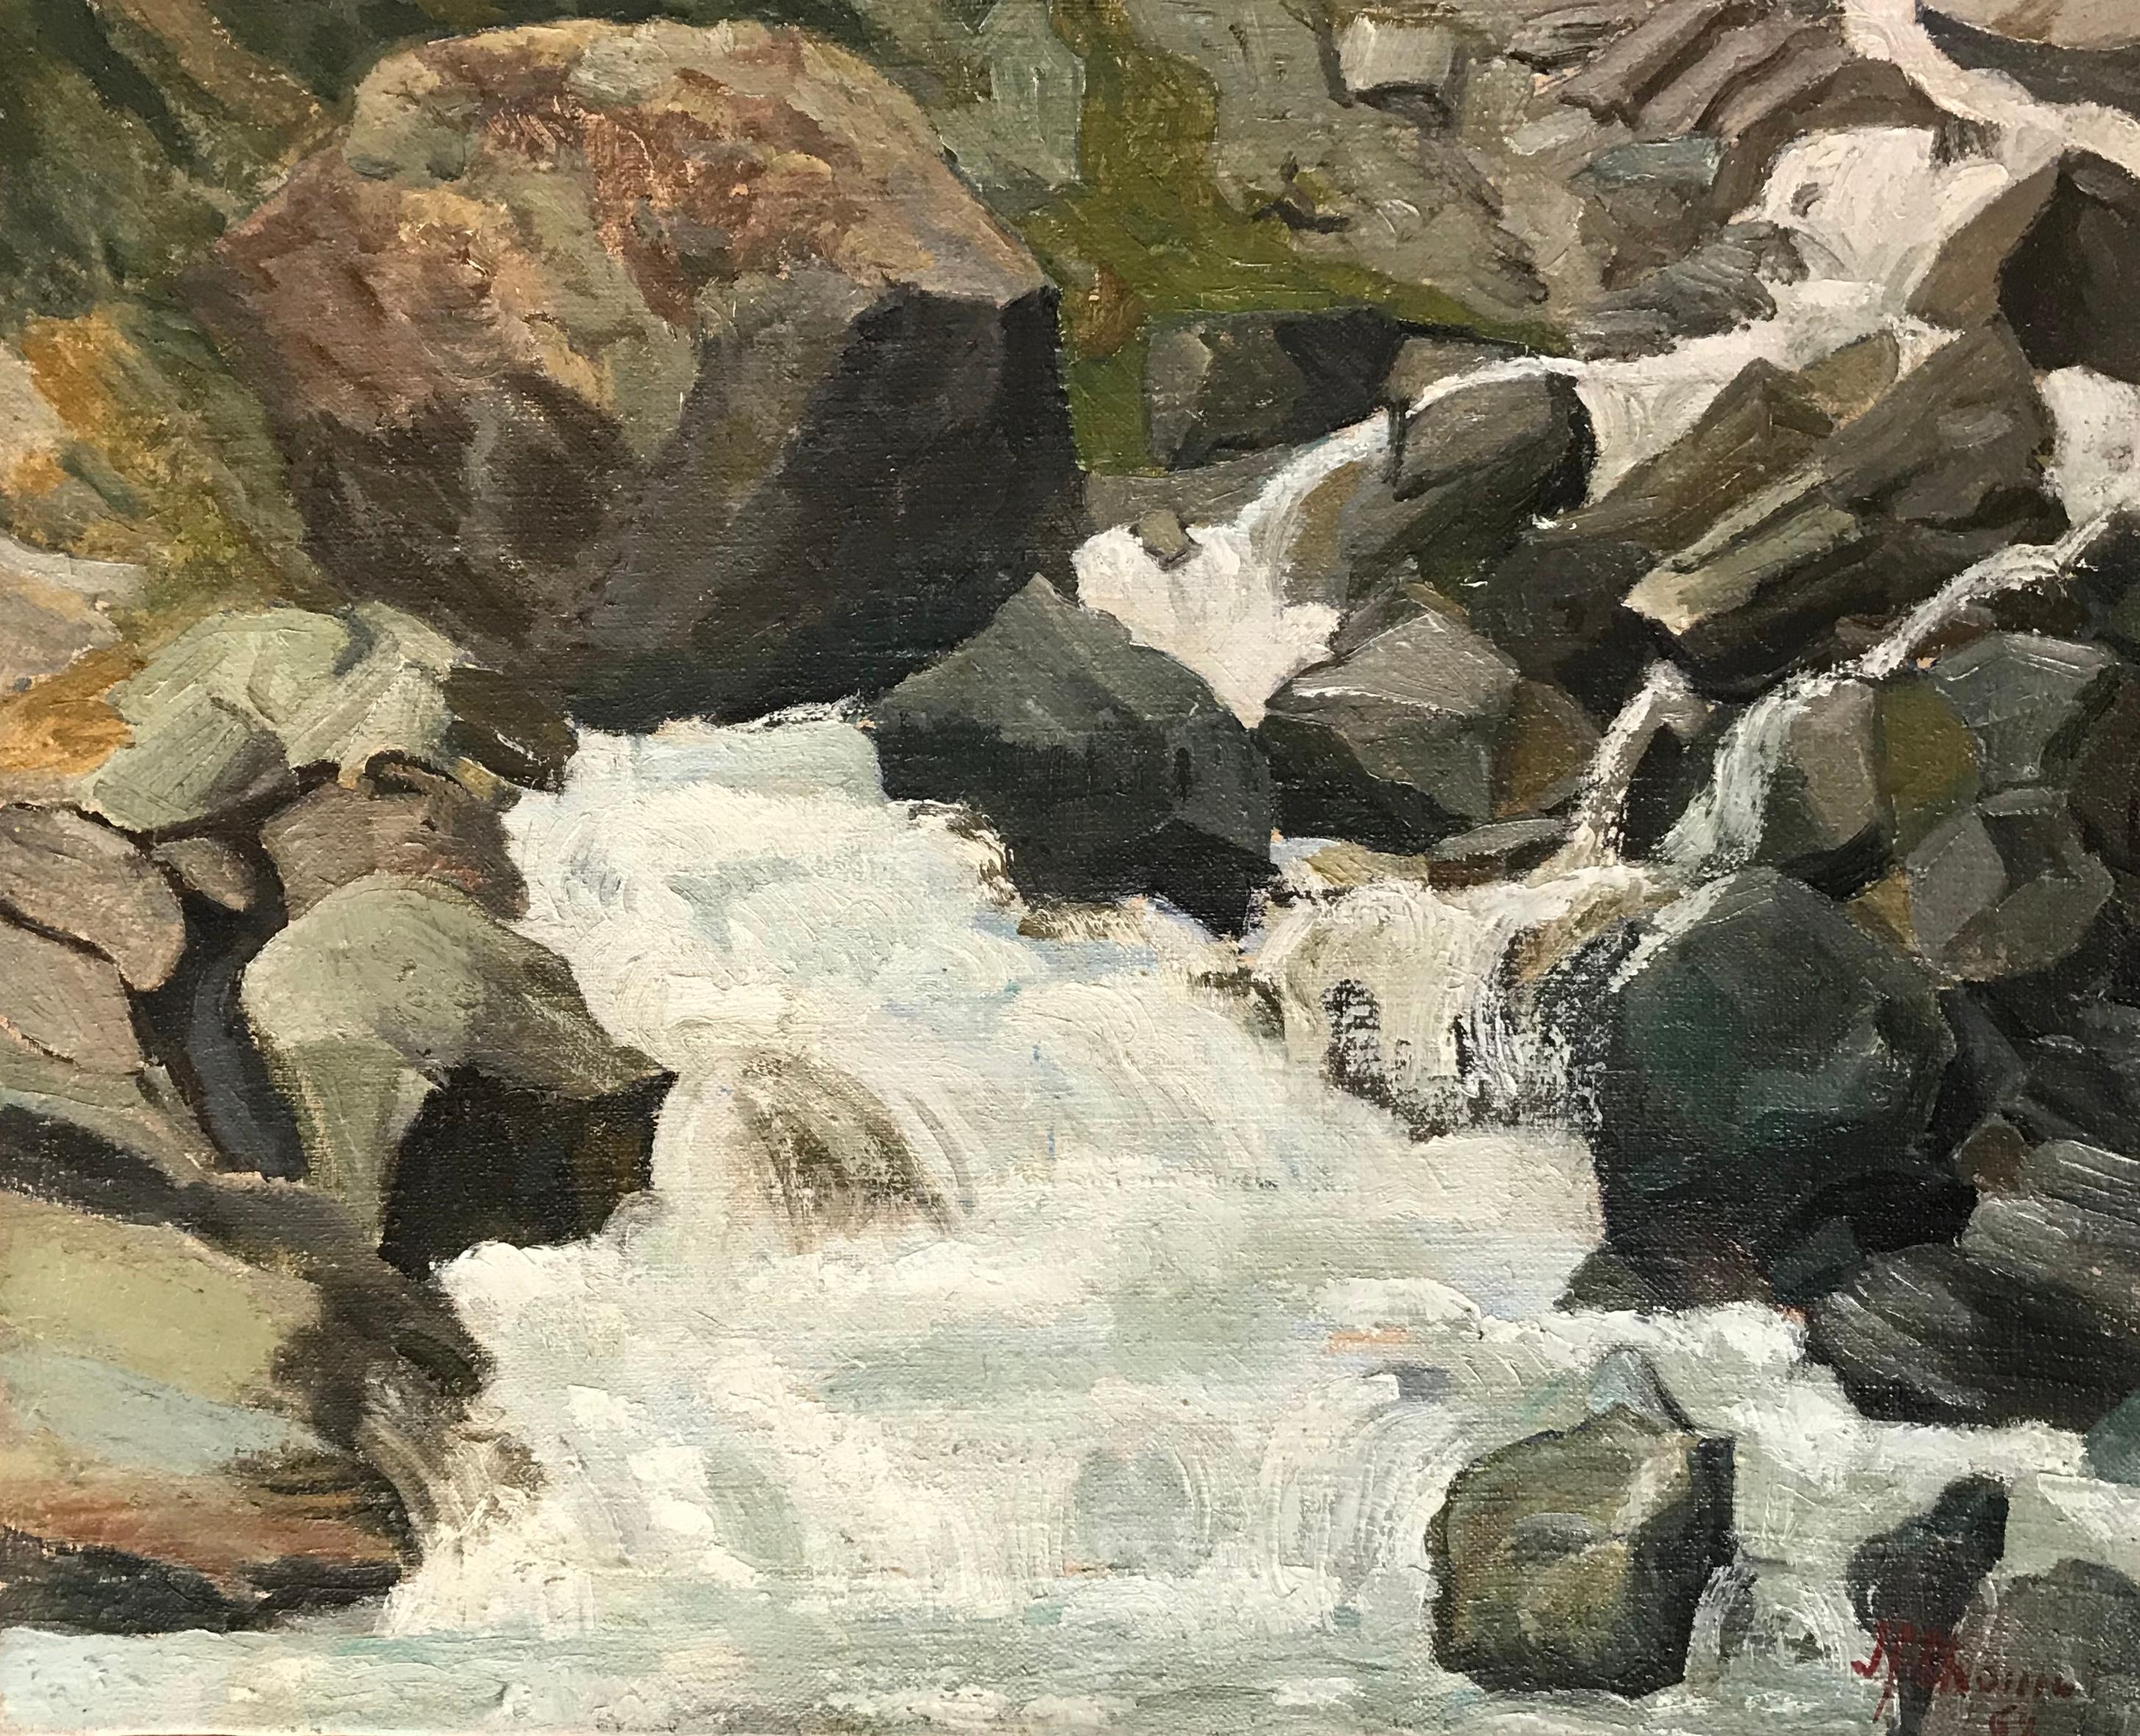 Jean F. Chomel Landscape Painting - Le Trift, Zermatt by Jean François Chomel - Oil on canvas